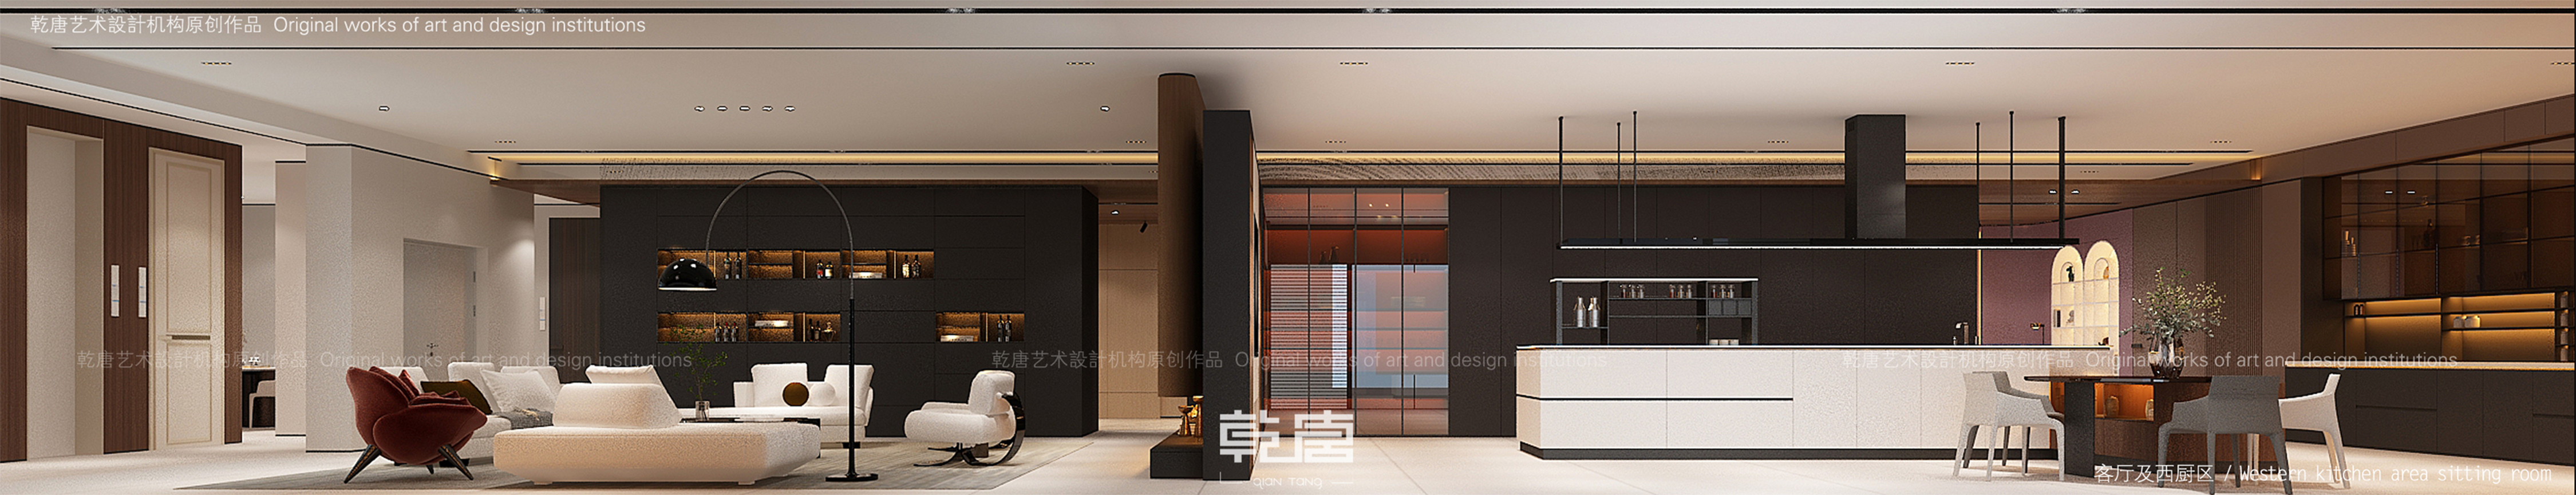 客厅展示区和橱柜展示区是通过两个厚重的体块去划分空间，同时留了缝隙，让两个空间具有流动性。
